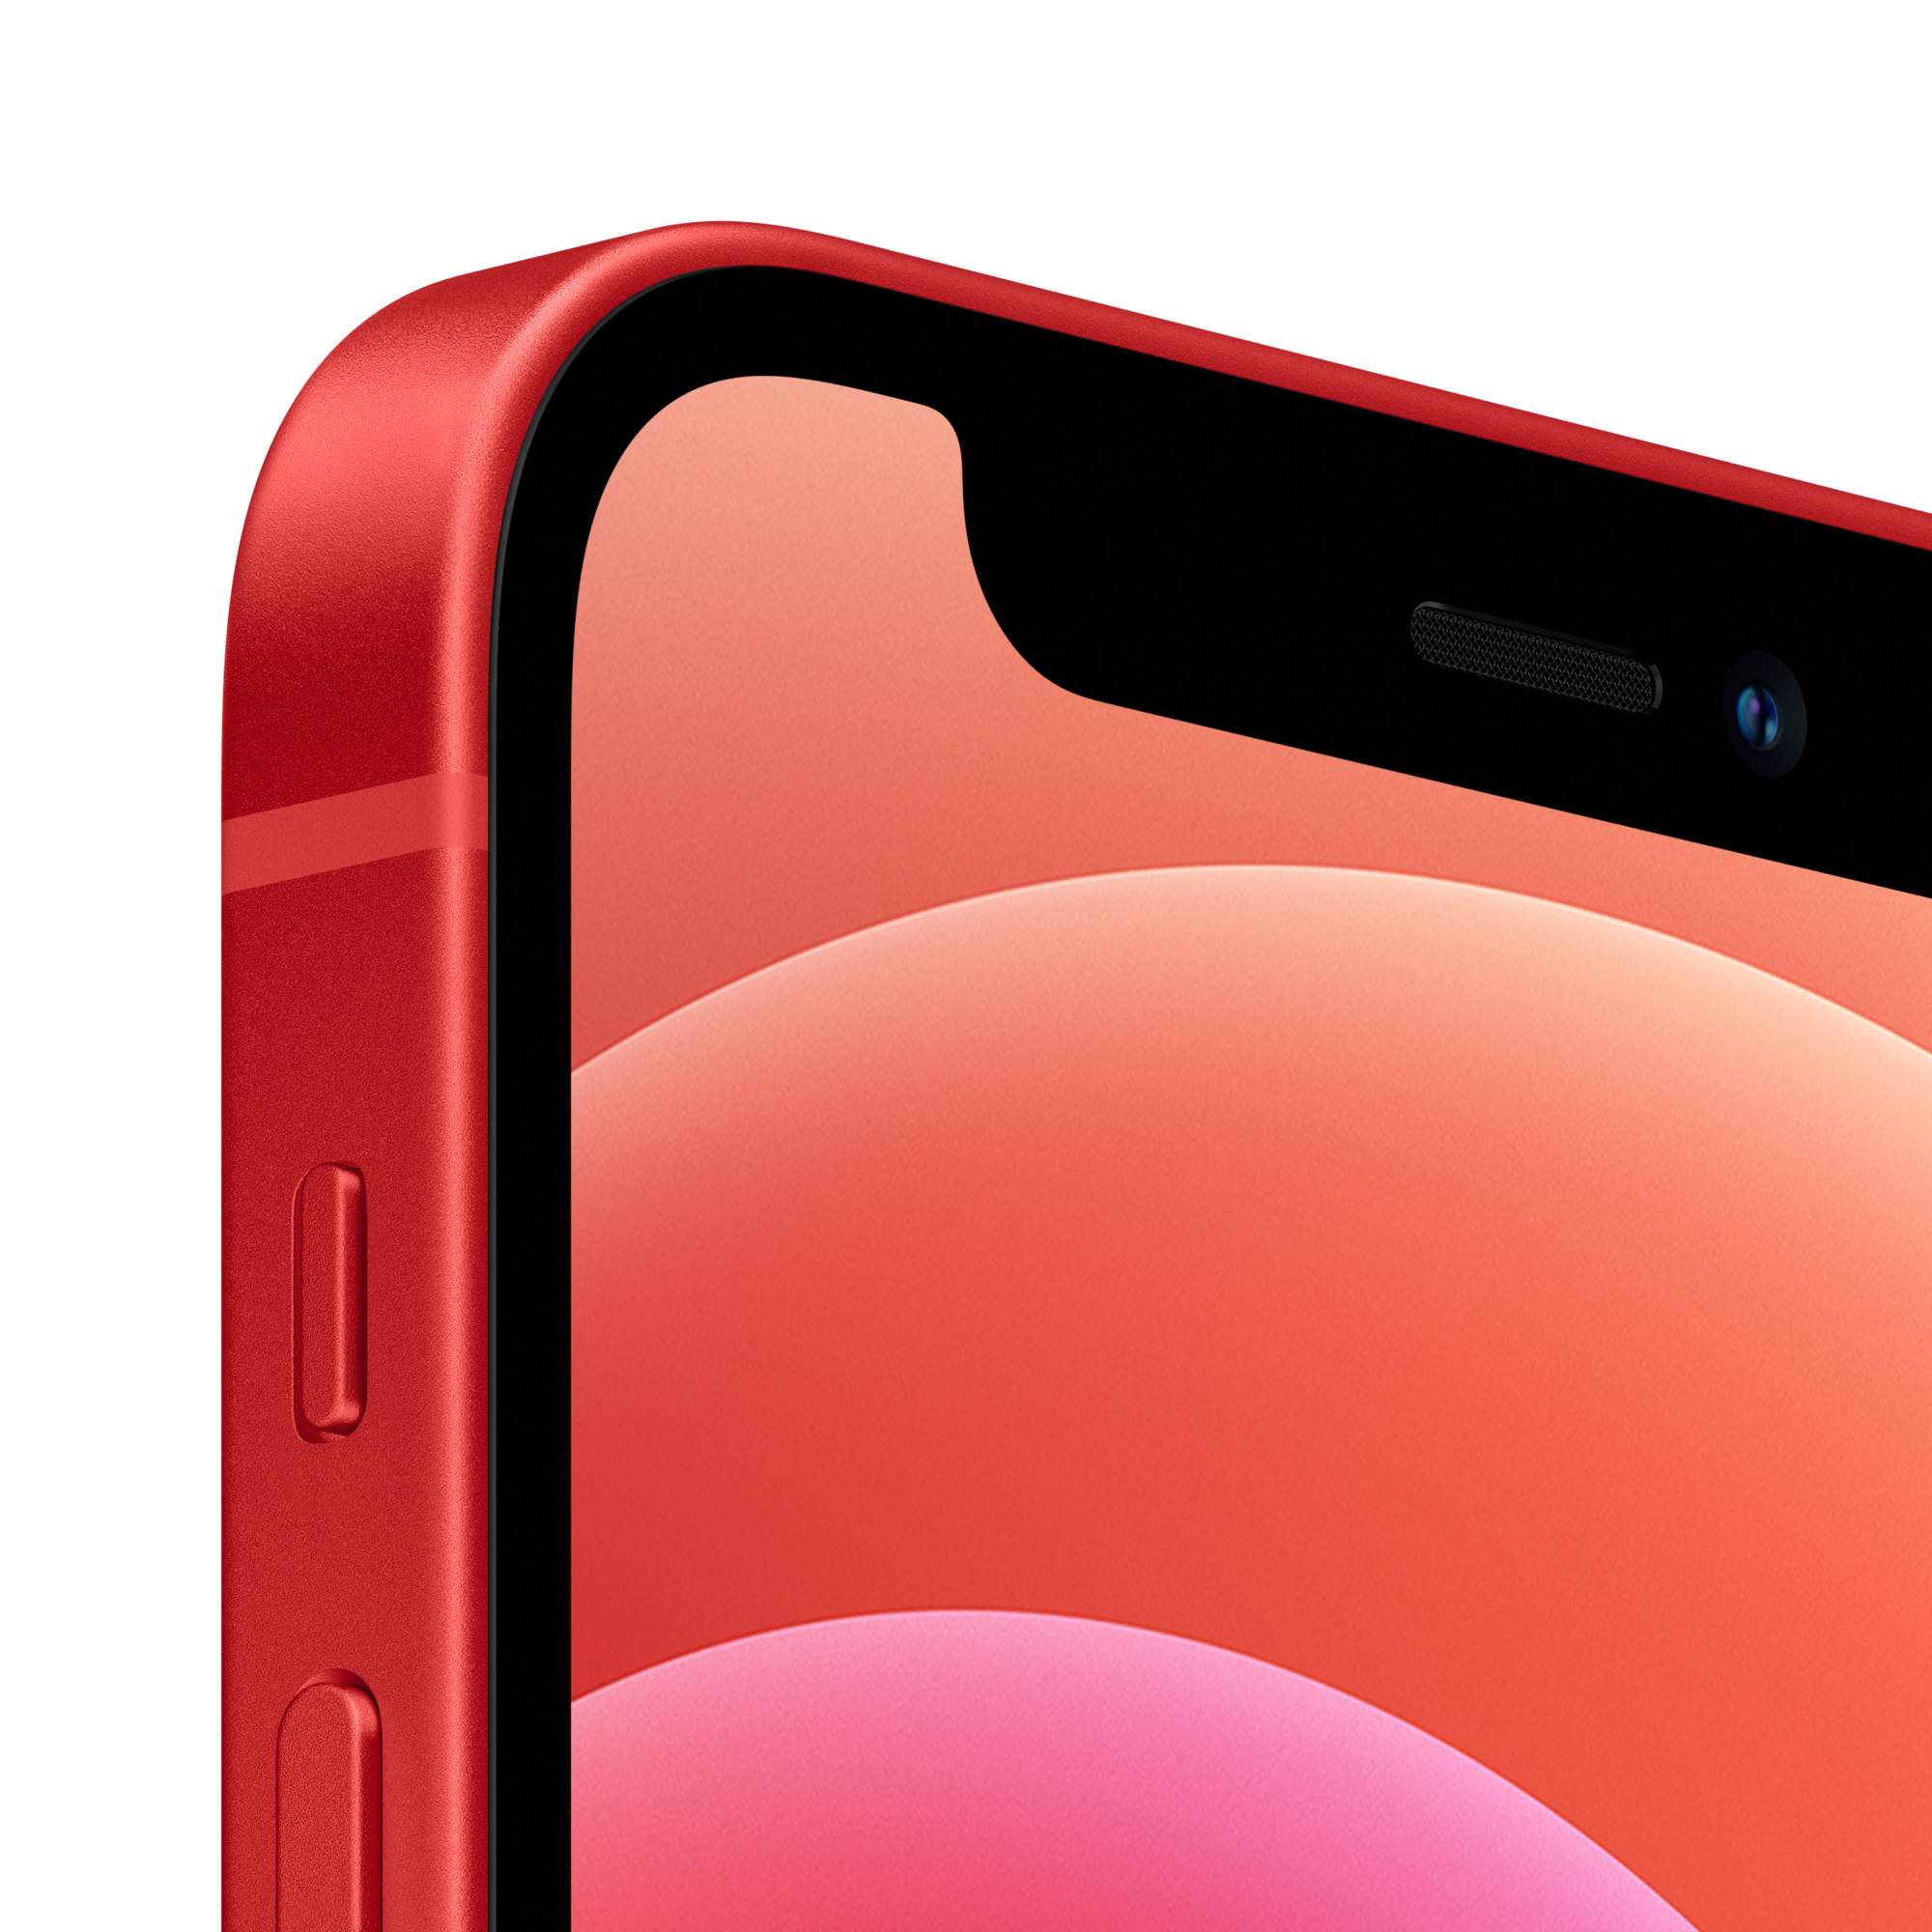 Смартфон Apple iPhone 12 mini 128GB (PRODUCT) RED - отзывы покупателей на  маркетплейсе Мегамаркет | Артикул: 100042105380